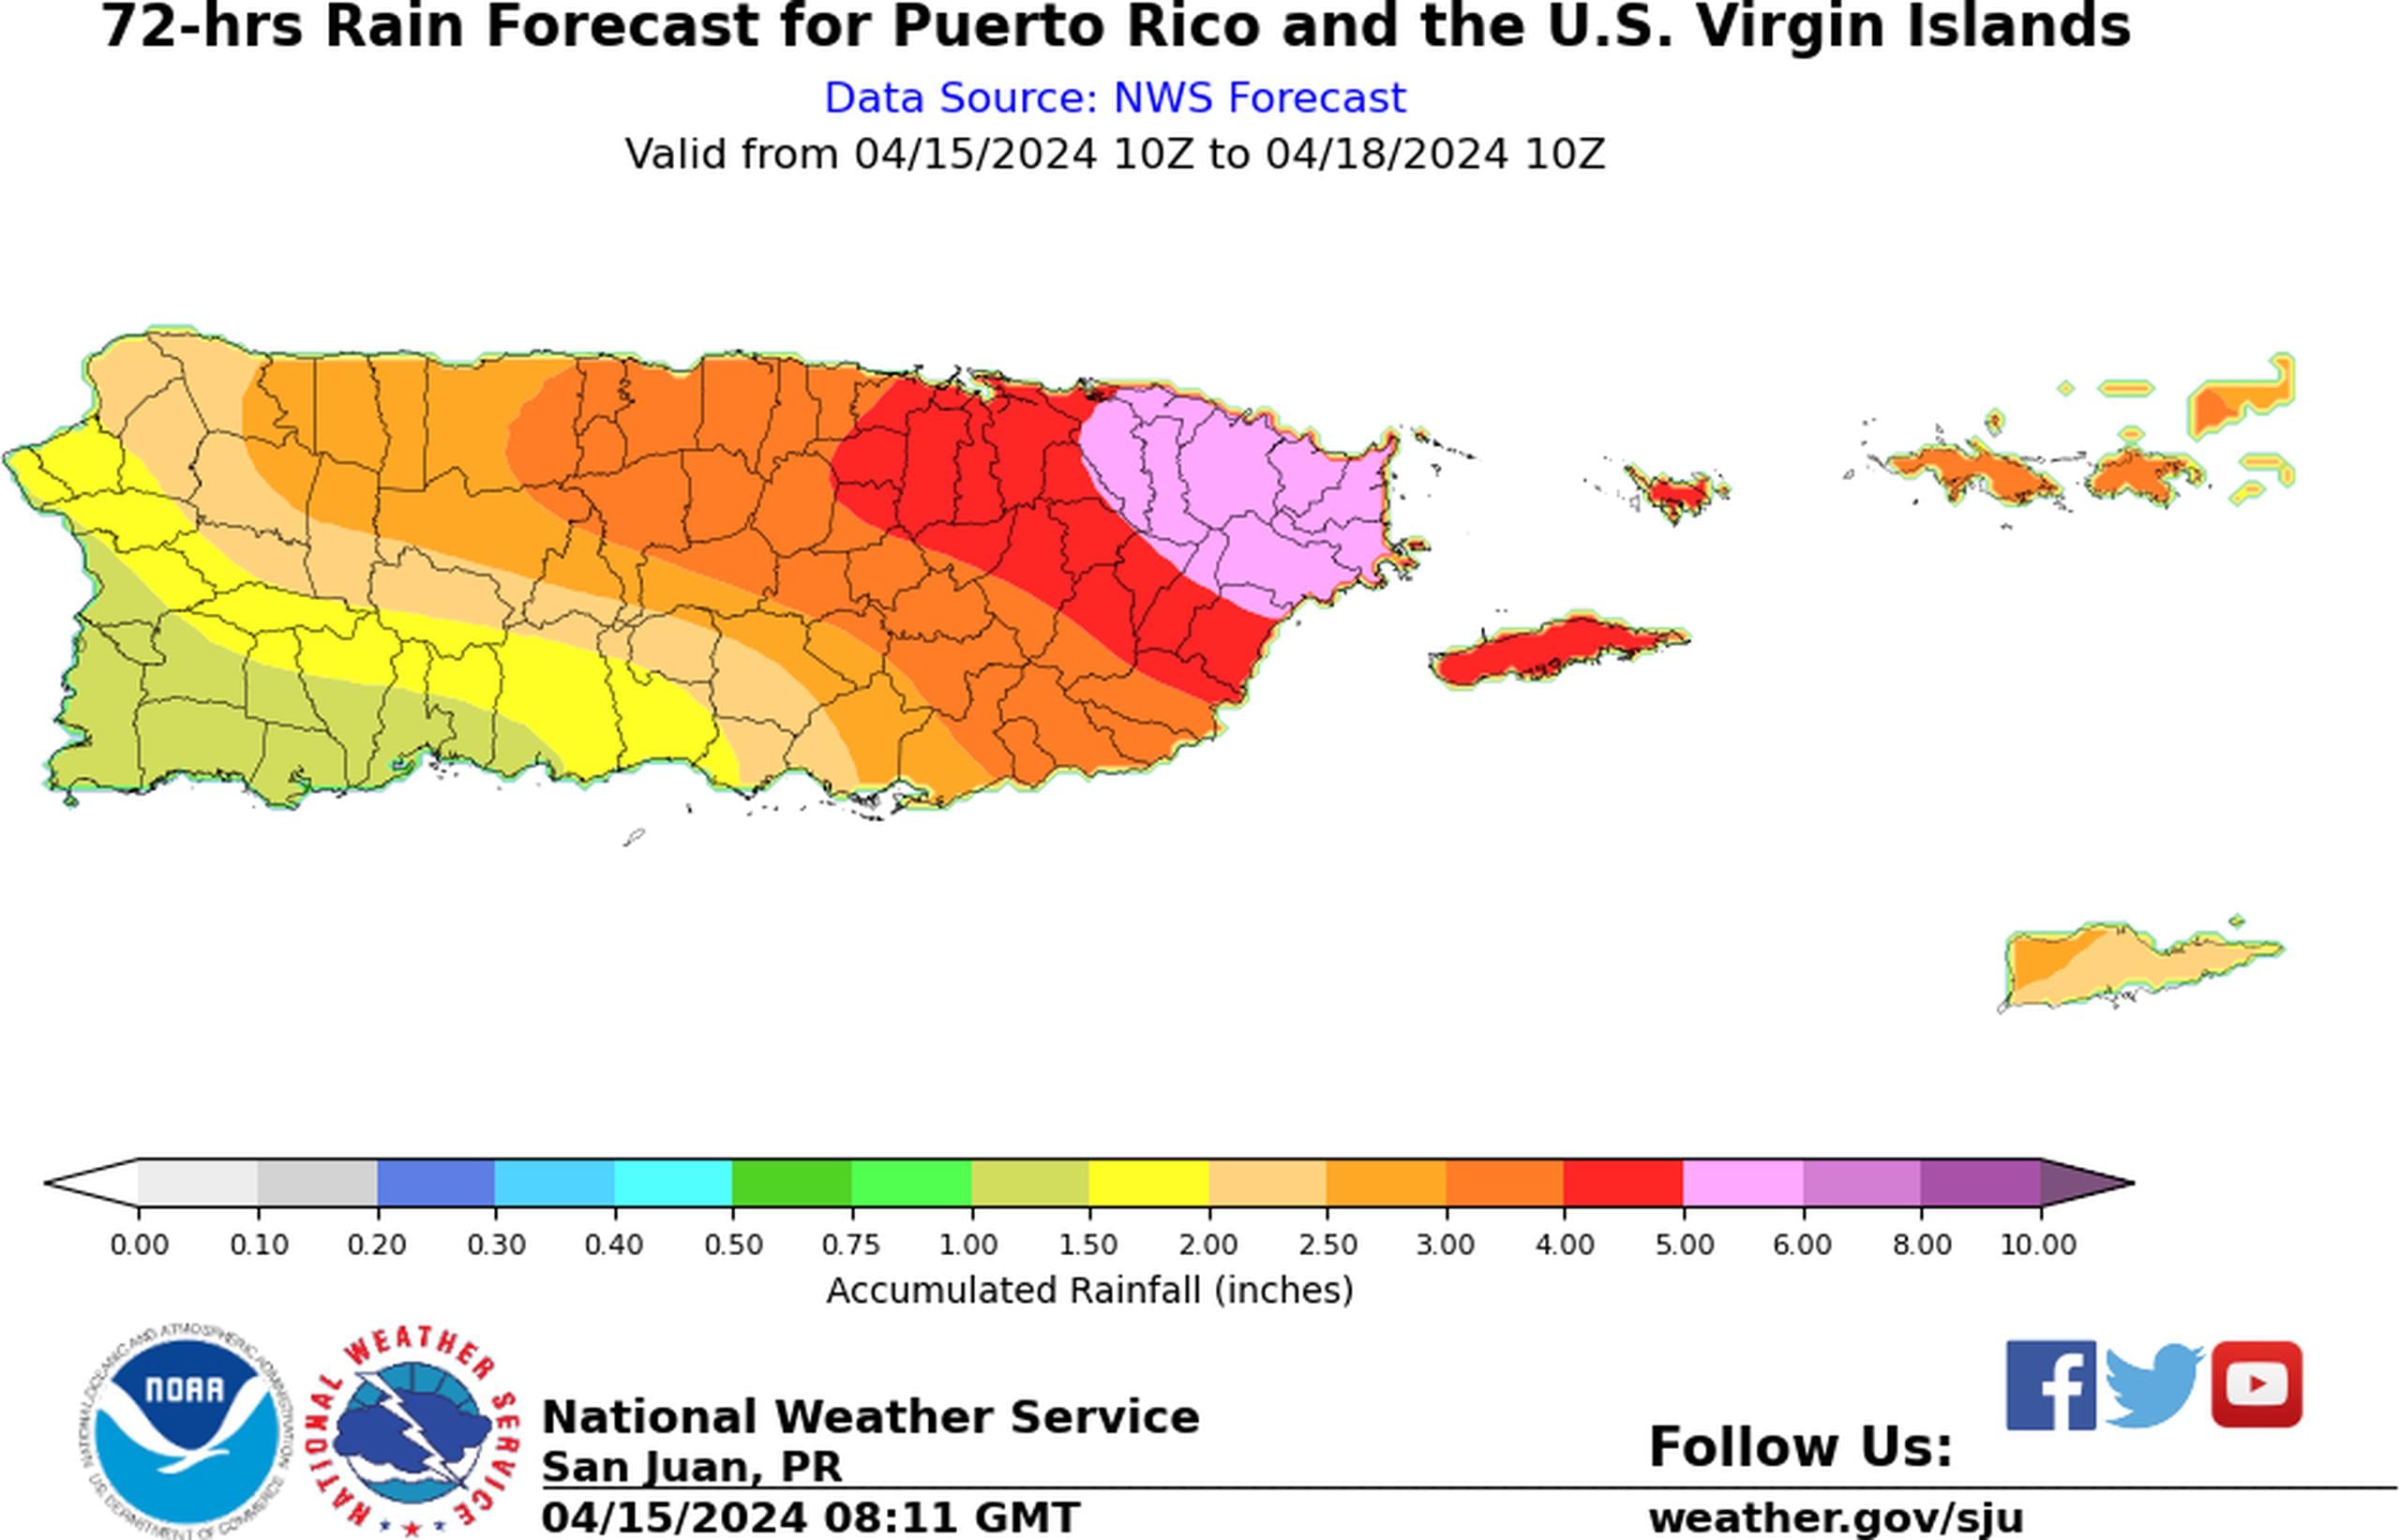 Pronóstico de lluvia de 72 horas para Puerto Rico, del 15 al 18 de abril de 2024.